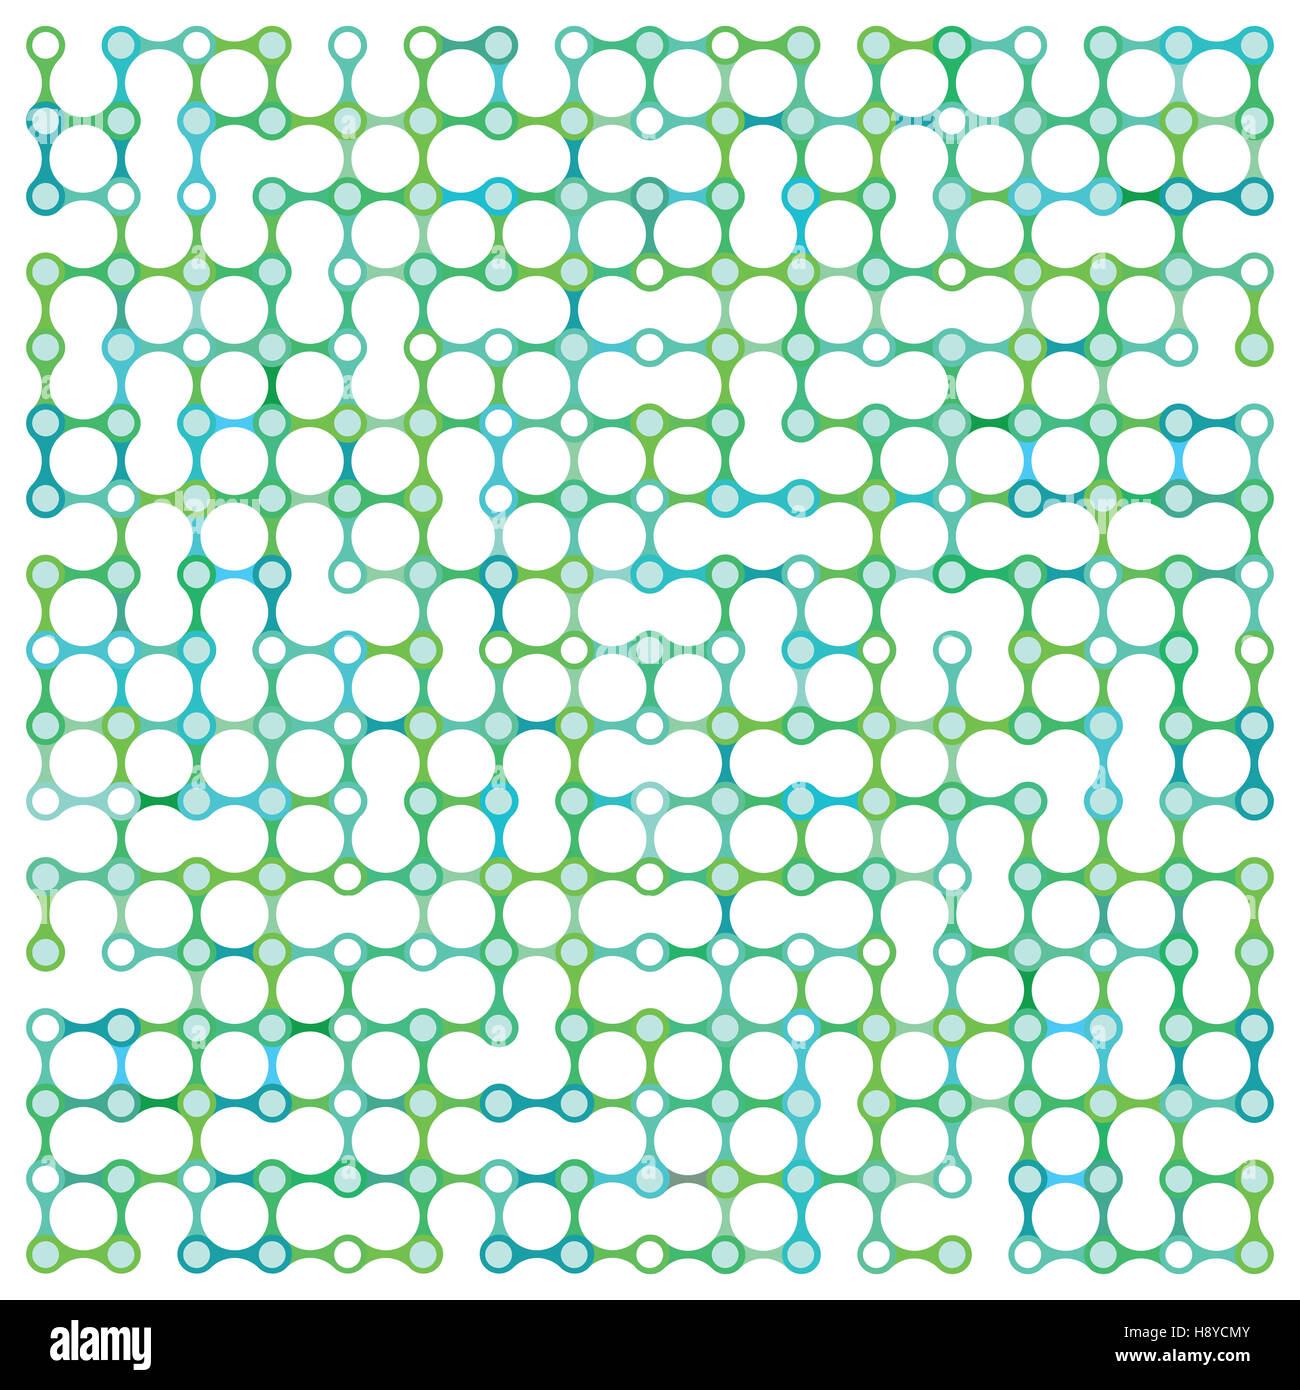 Zusammenfassung Hintergrund mit grünen Punkten Stockfoto